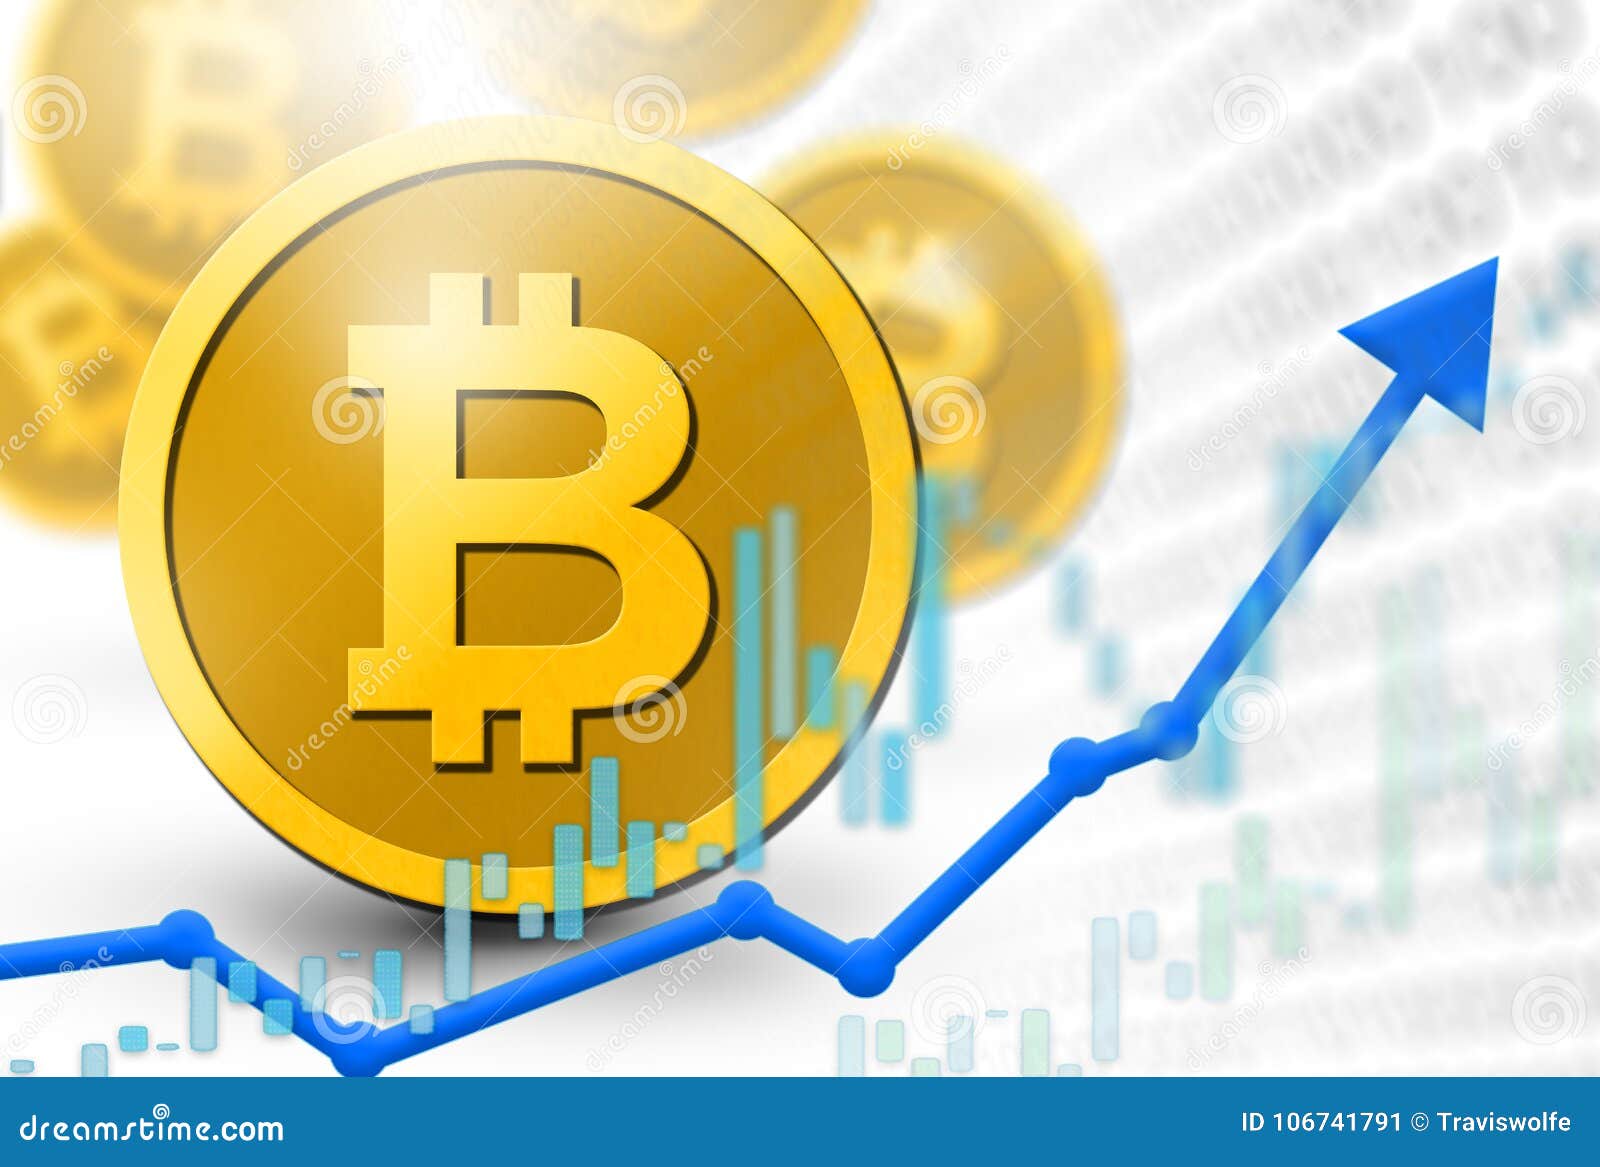 è il momento giusto per comprare bitcoin bitcoin demo online